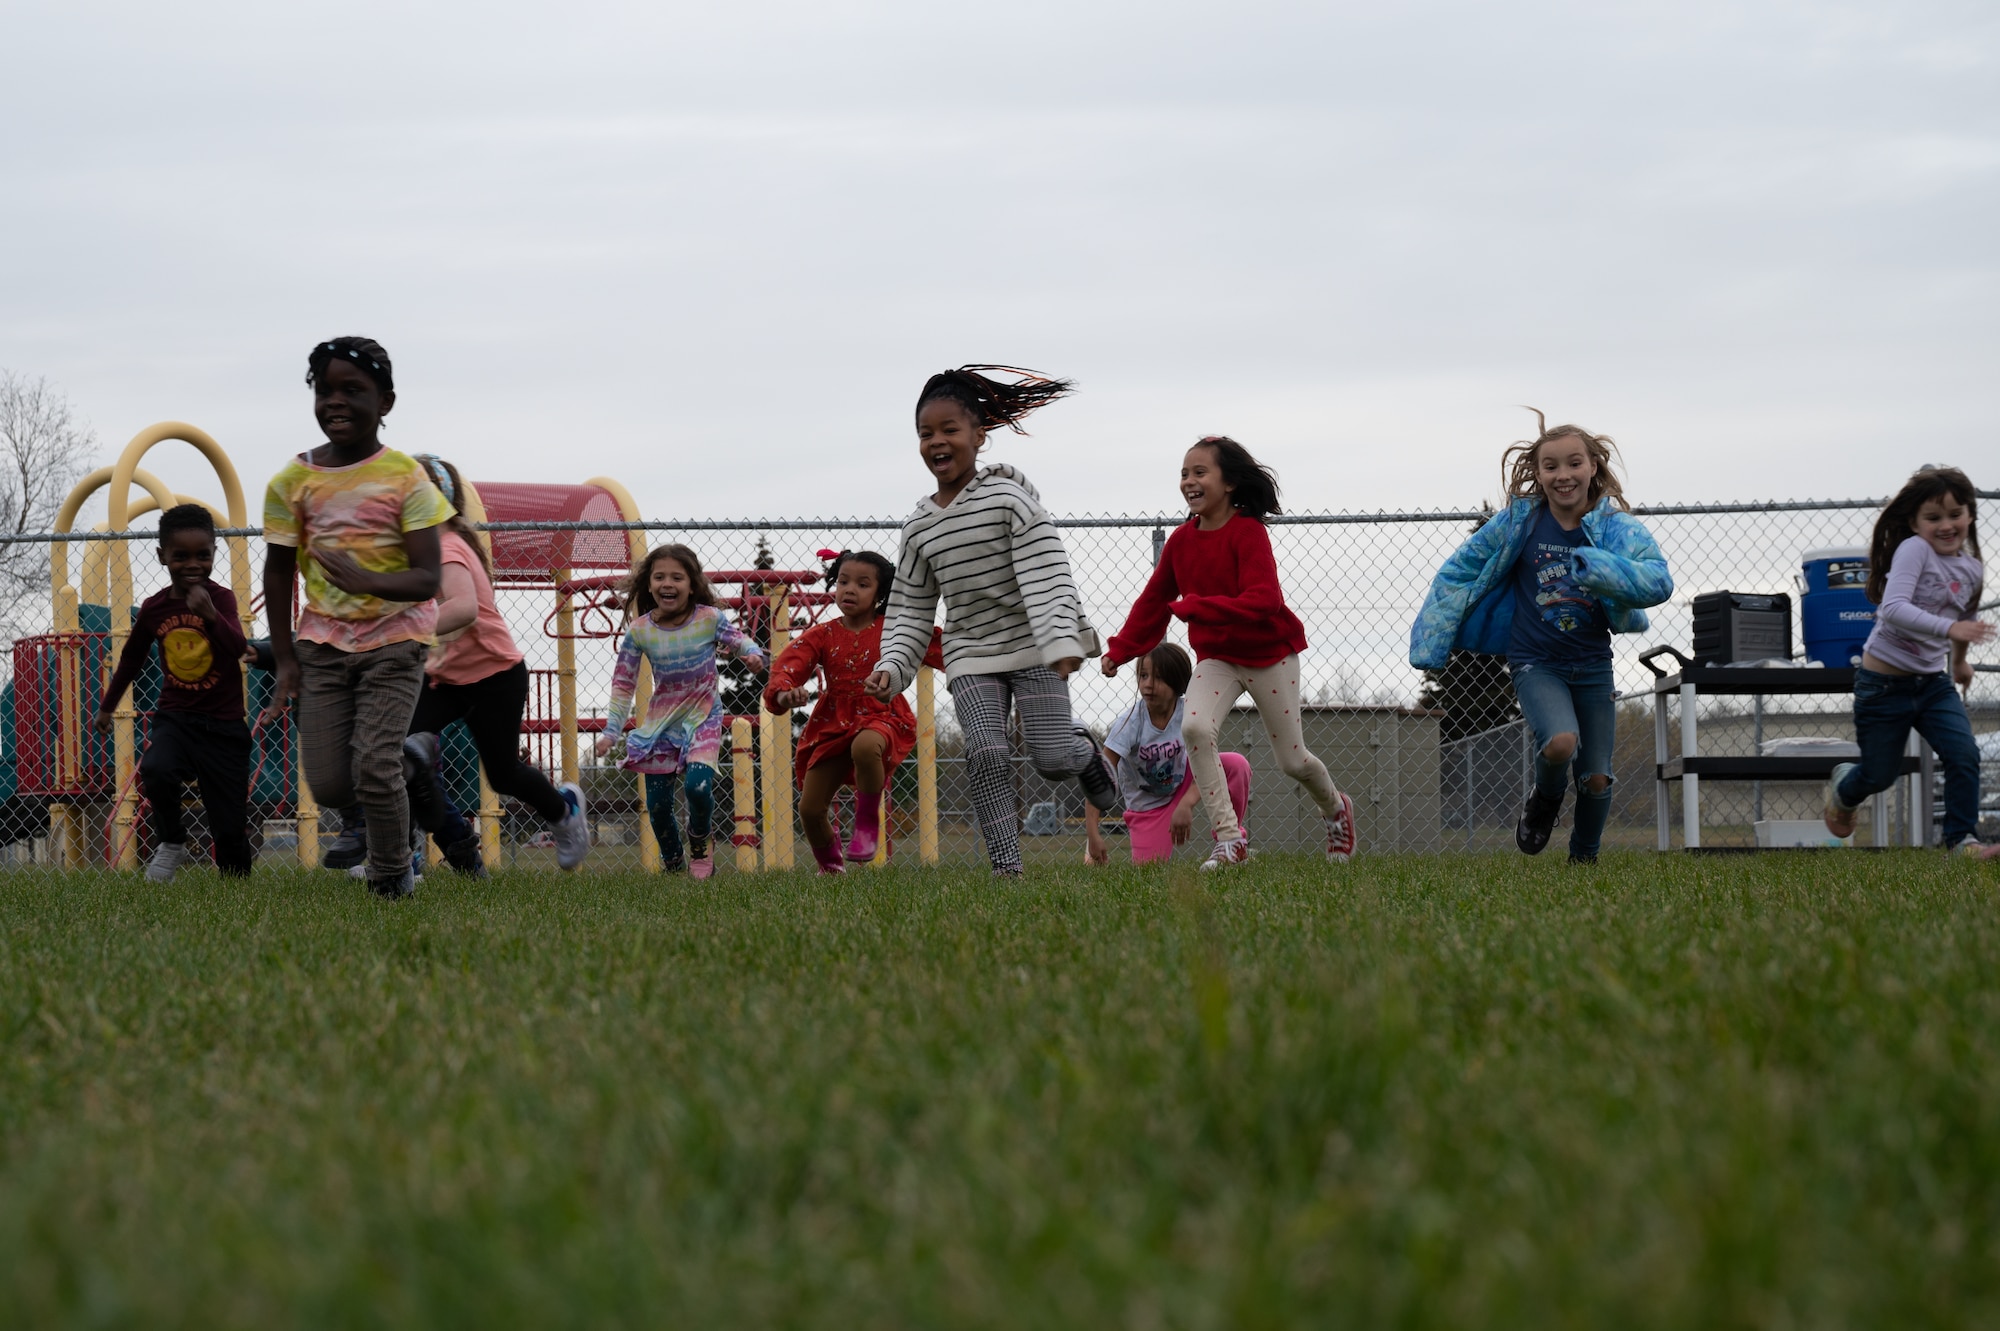 Children running outside